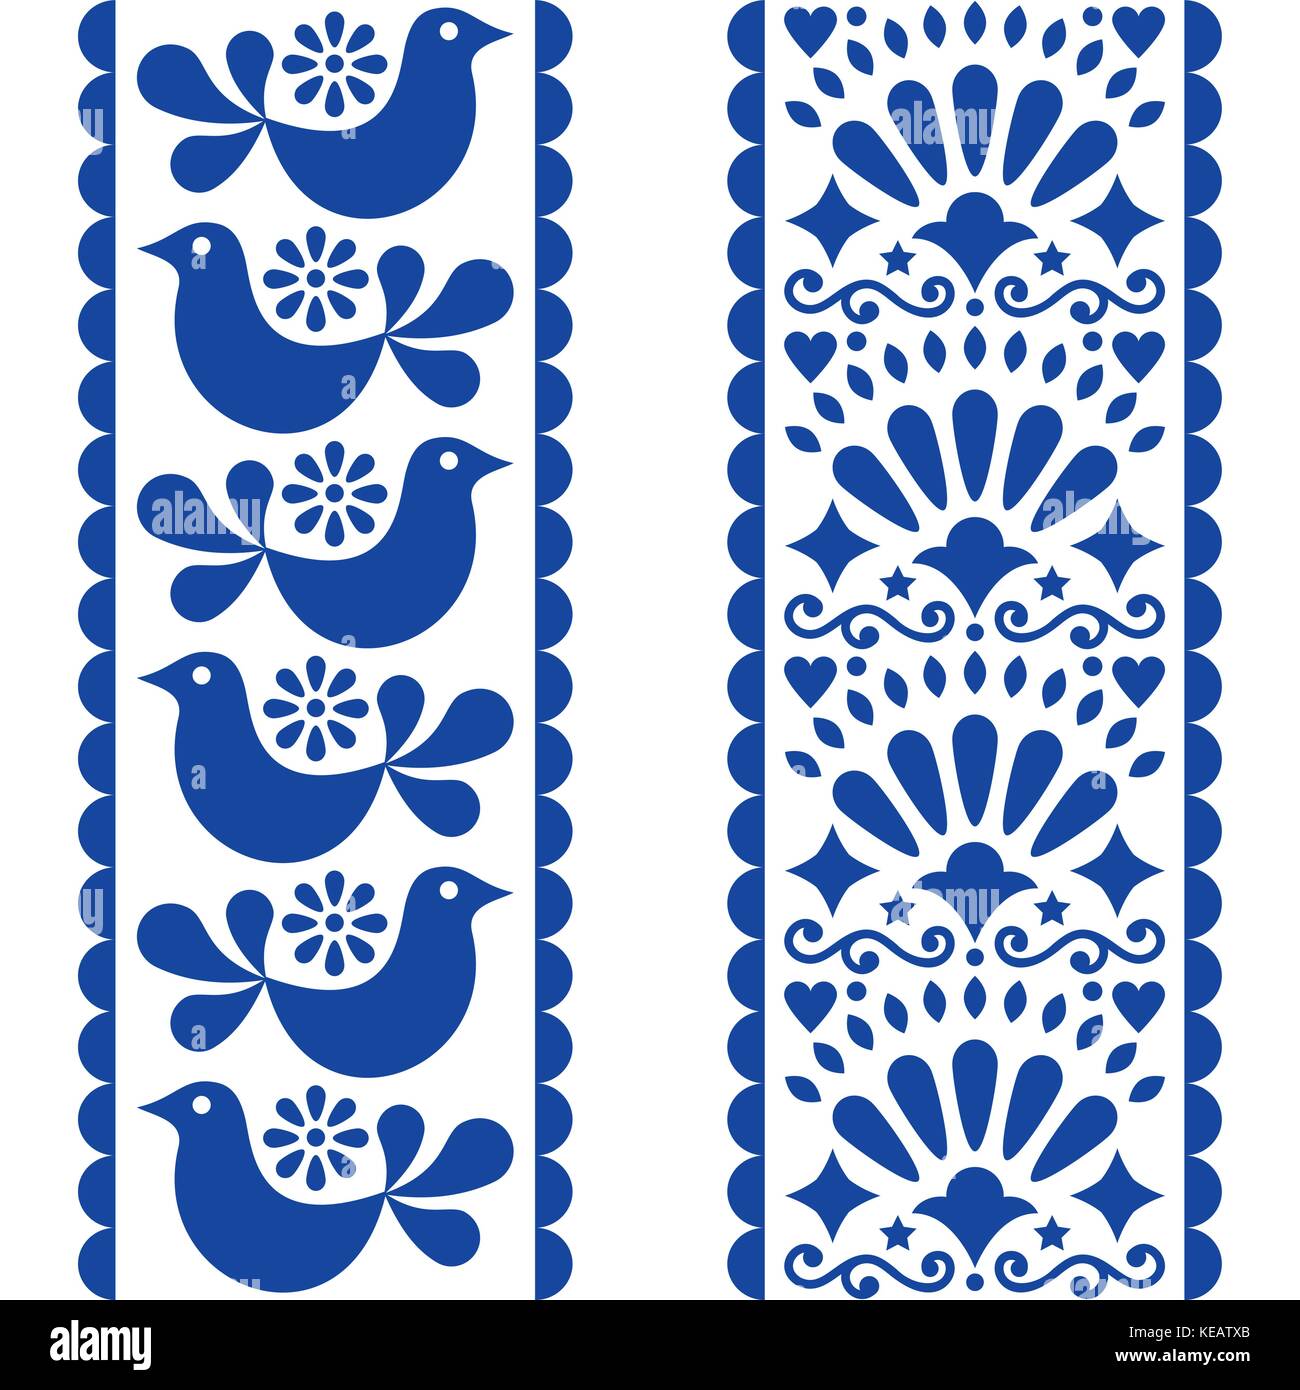 Art populaire - motif transparente longue de style mexicain avec des bandes d'oiseaux et de fleurs en bleu marine Illustration de Vecteur